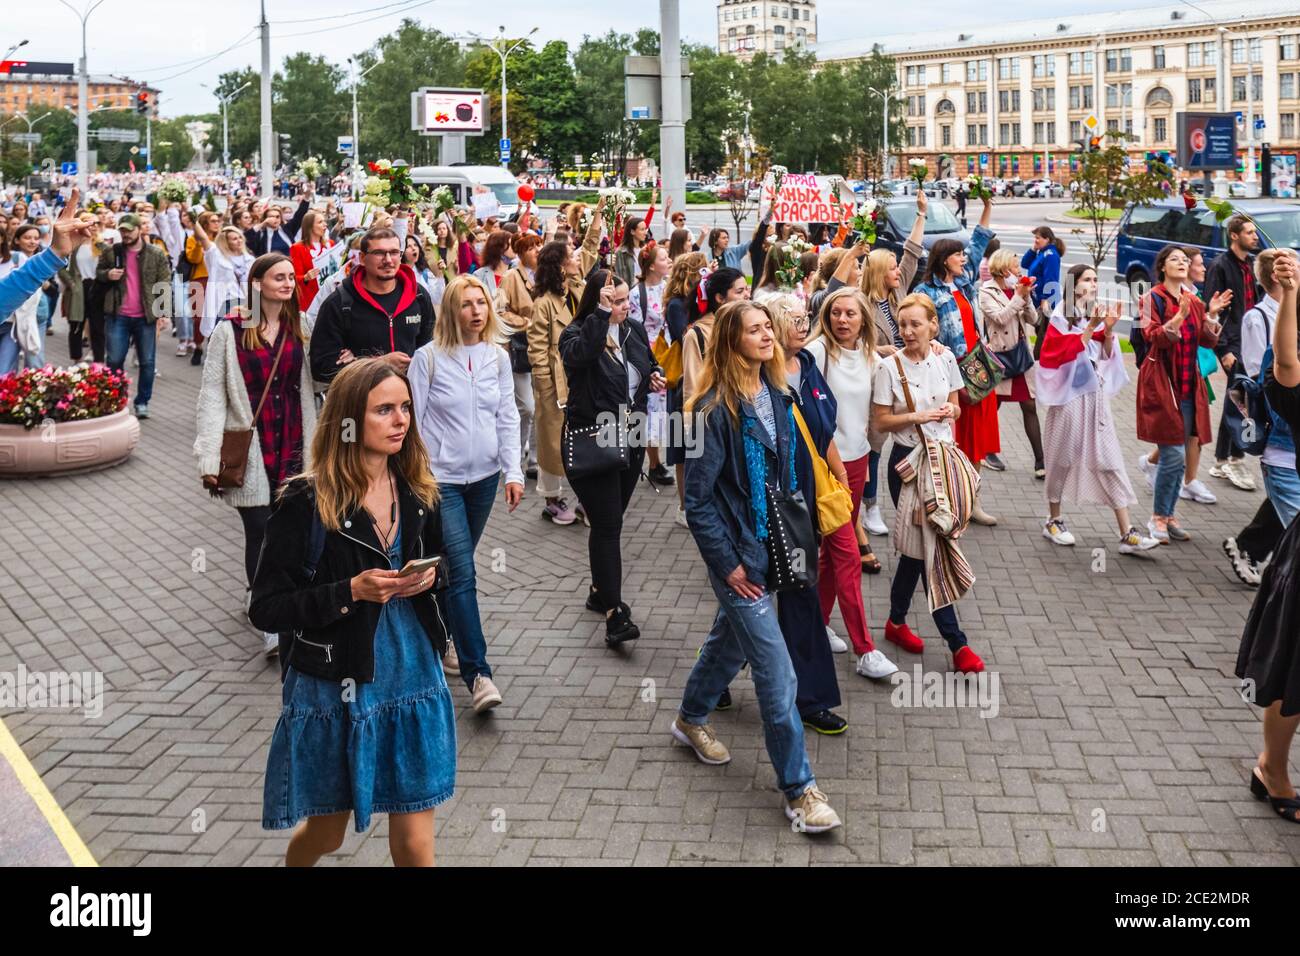 Des femmes lors de manifestations pacifiques en Biélorussie contre des élections présidentielles truquées à Minsk, en Biélorussie. Minsk, Bélarus - août 30 2020. Banque D'Images